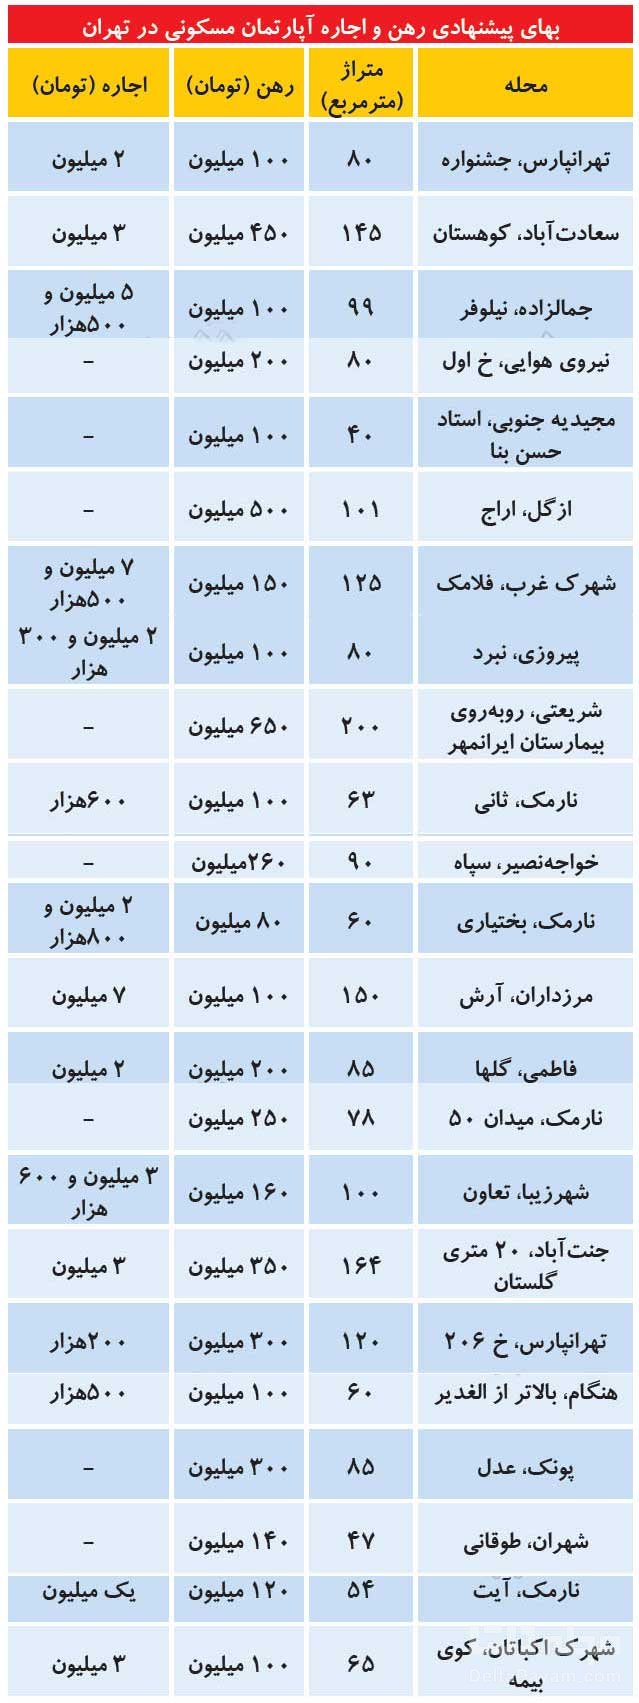 قیمت-آپارتمان-مسکونی-در-تهران